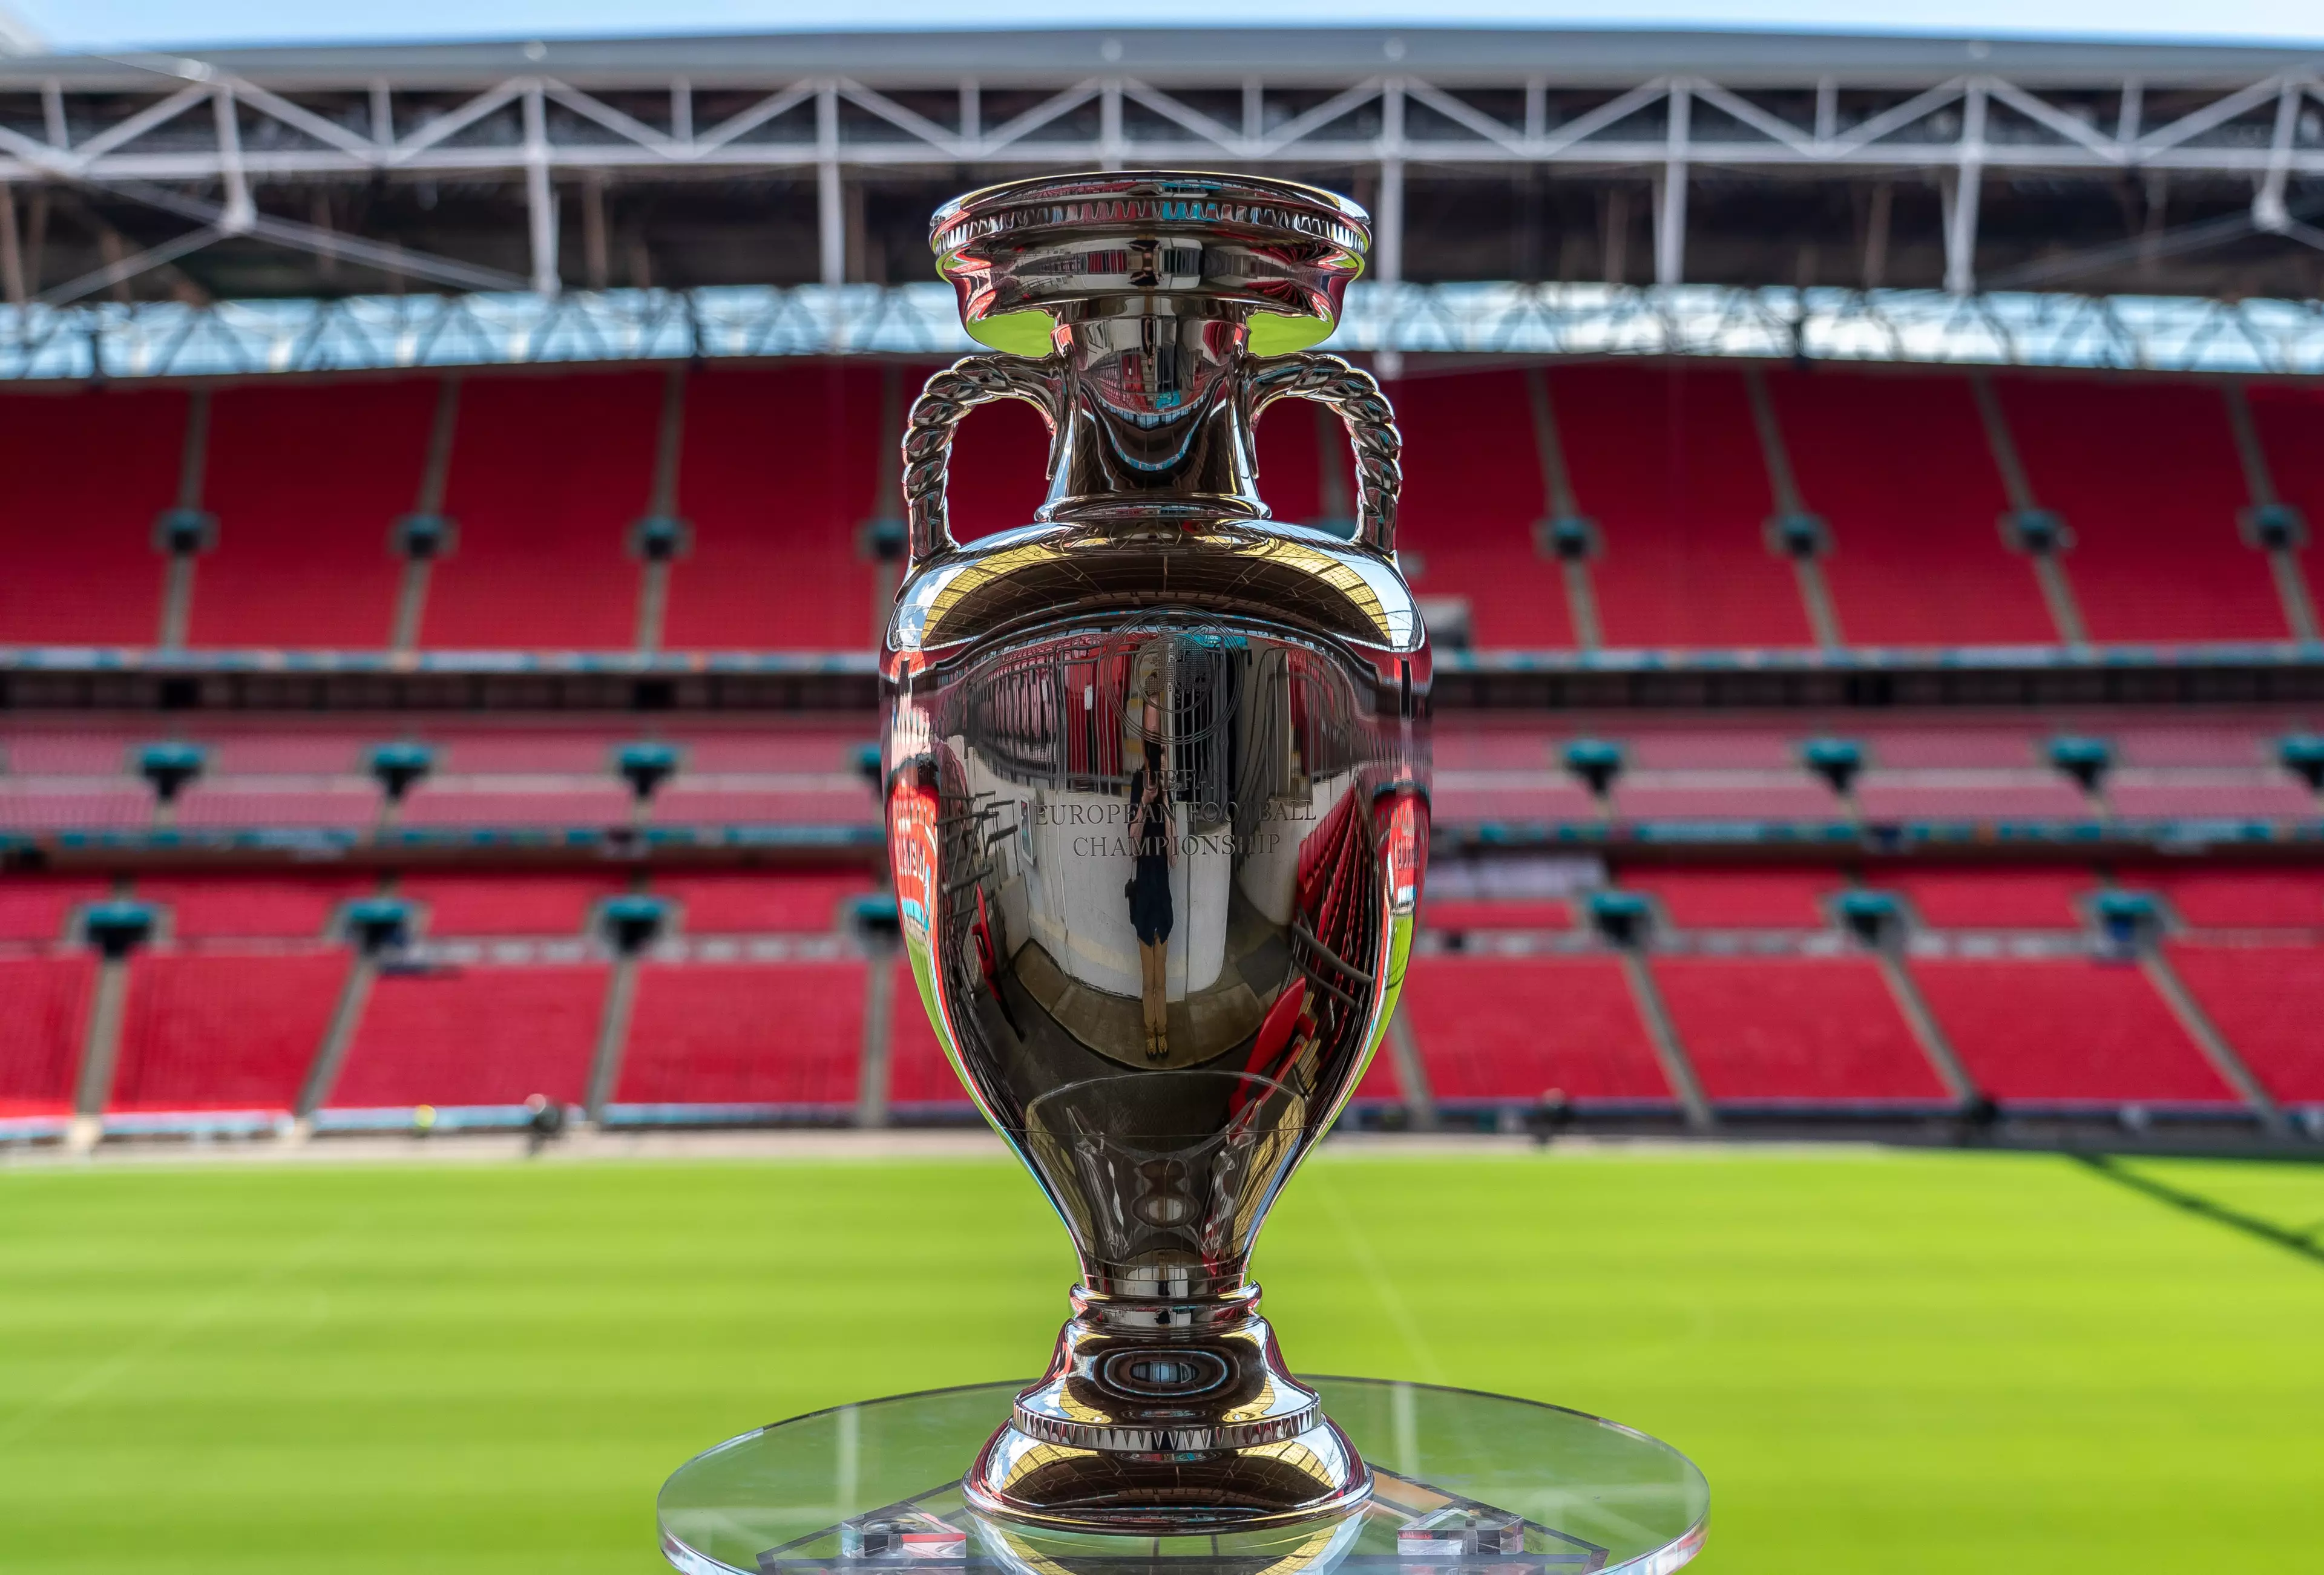 UEFA EURO 2020 trophy tour at Wembley Stadium (